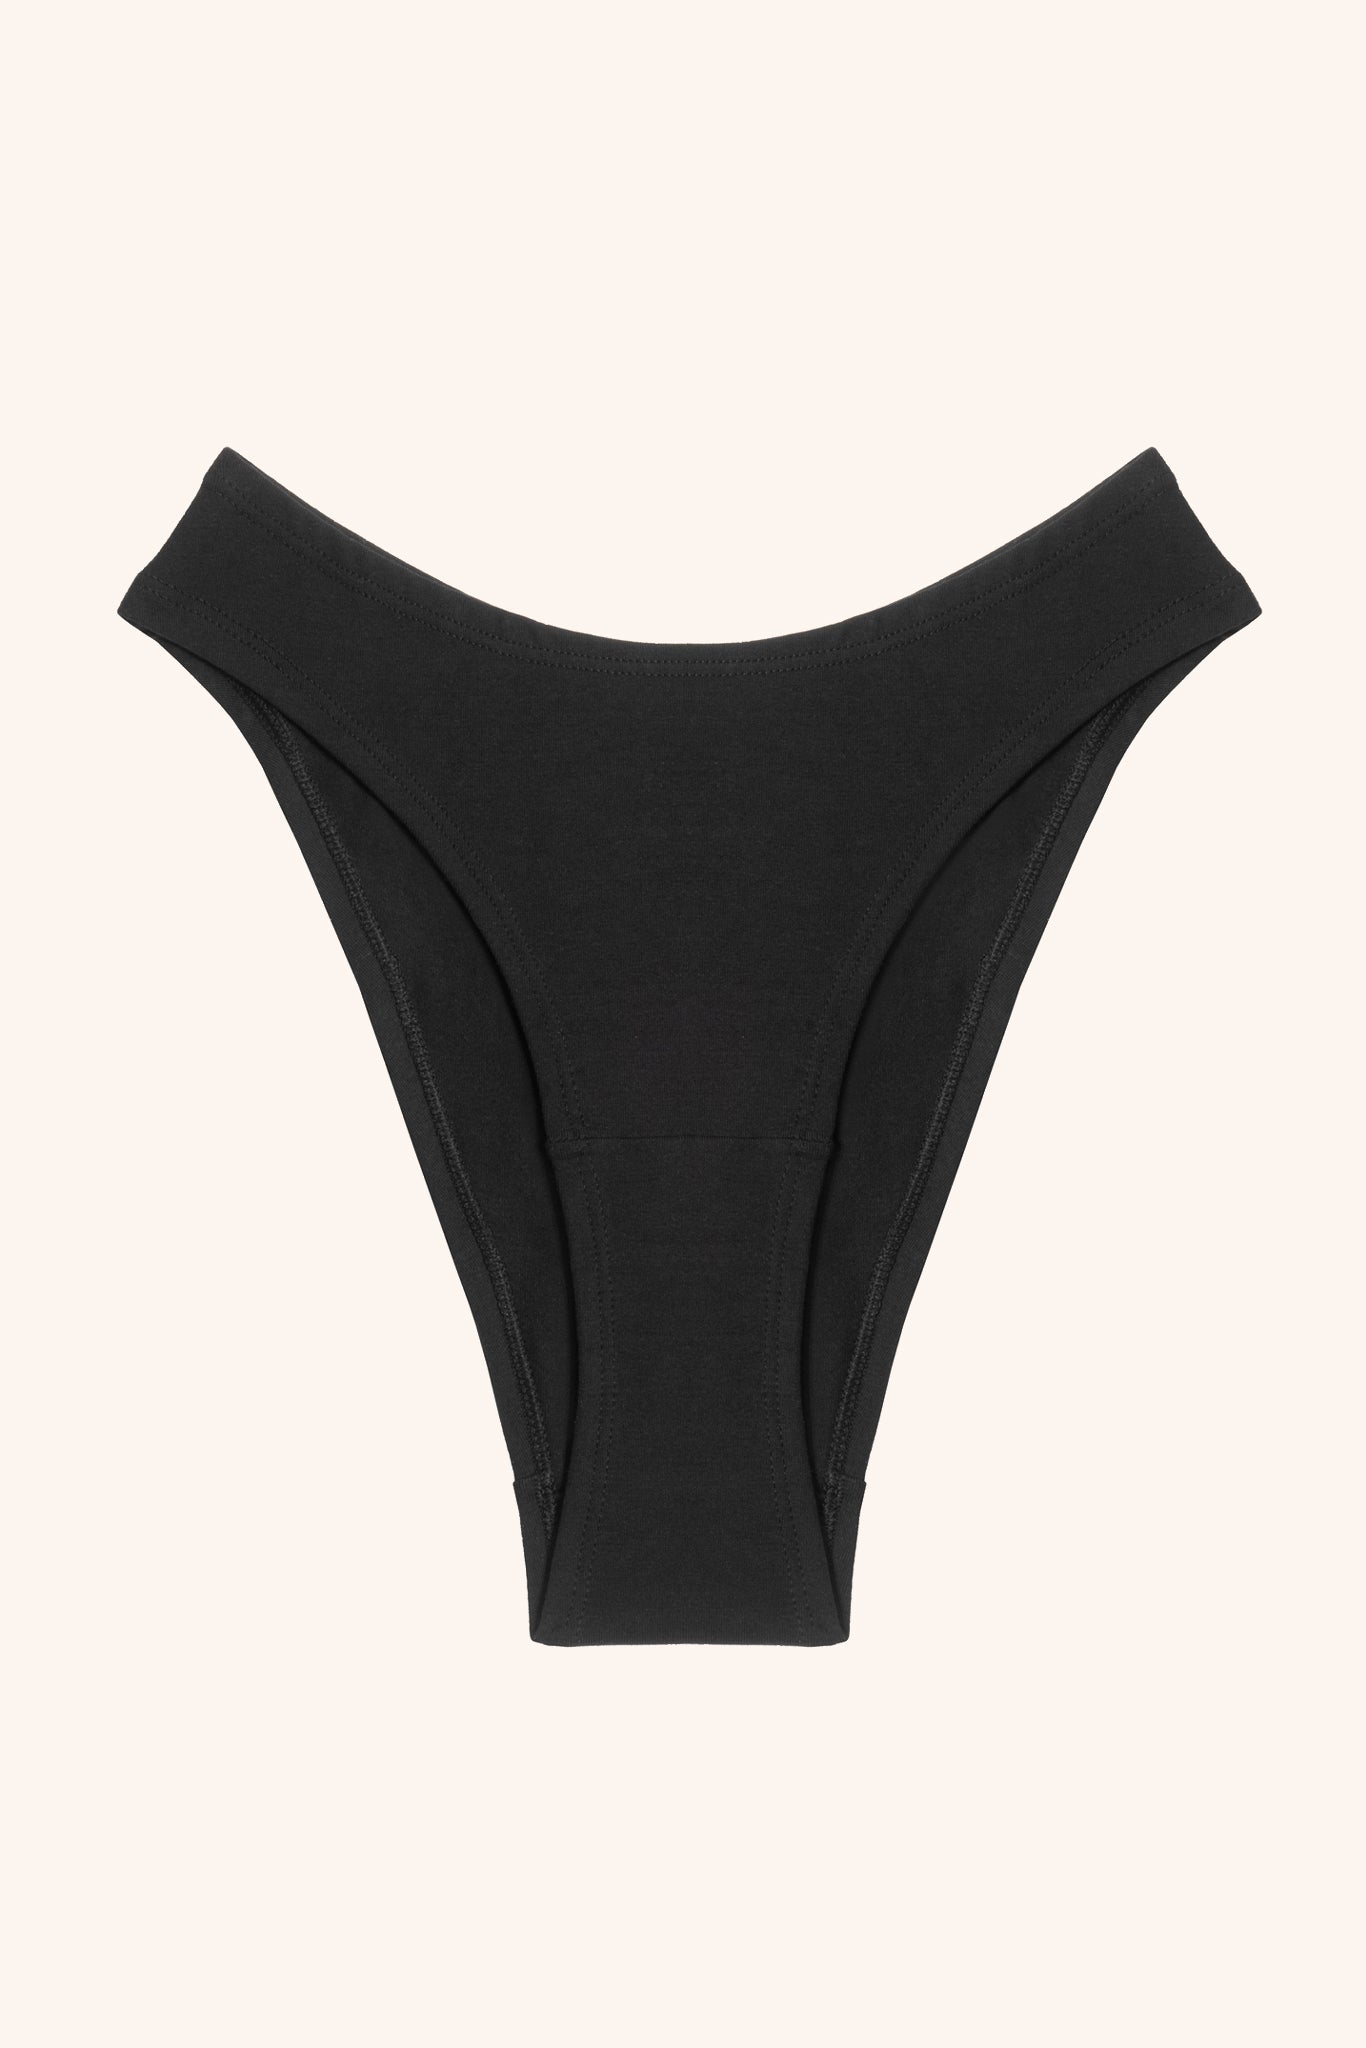 Women's cotton underwear Black - Marat